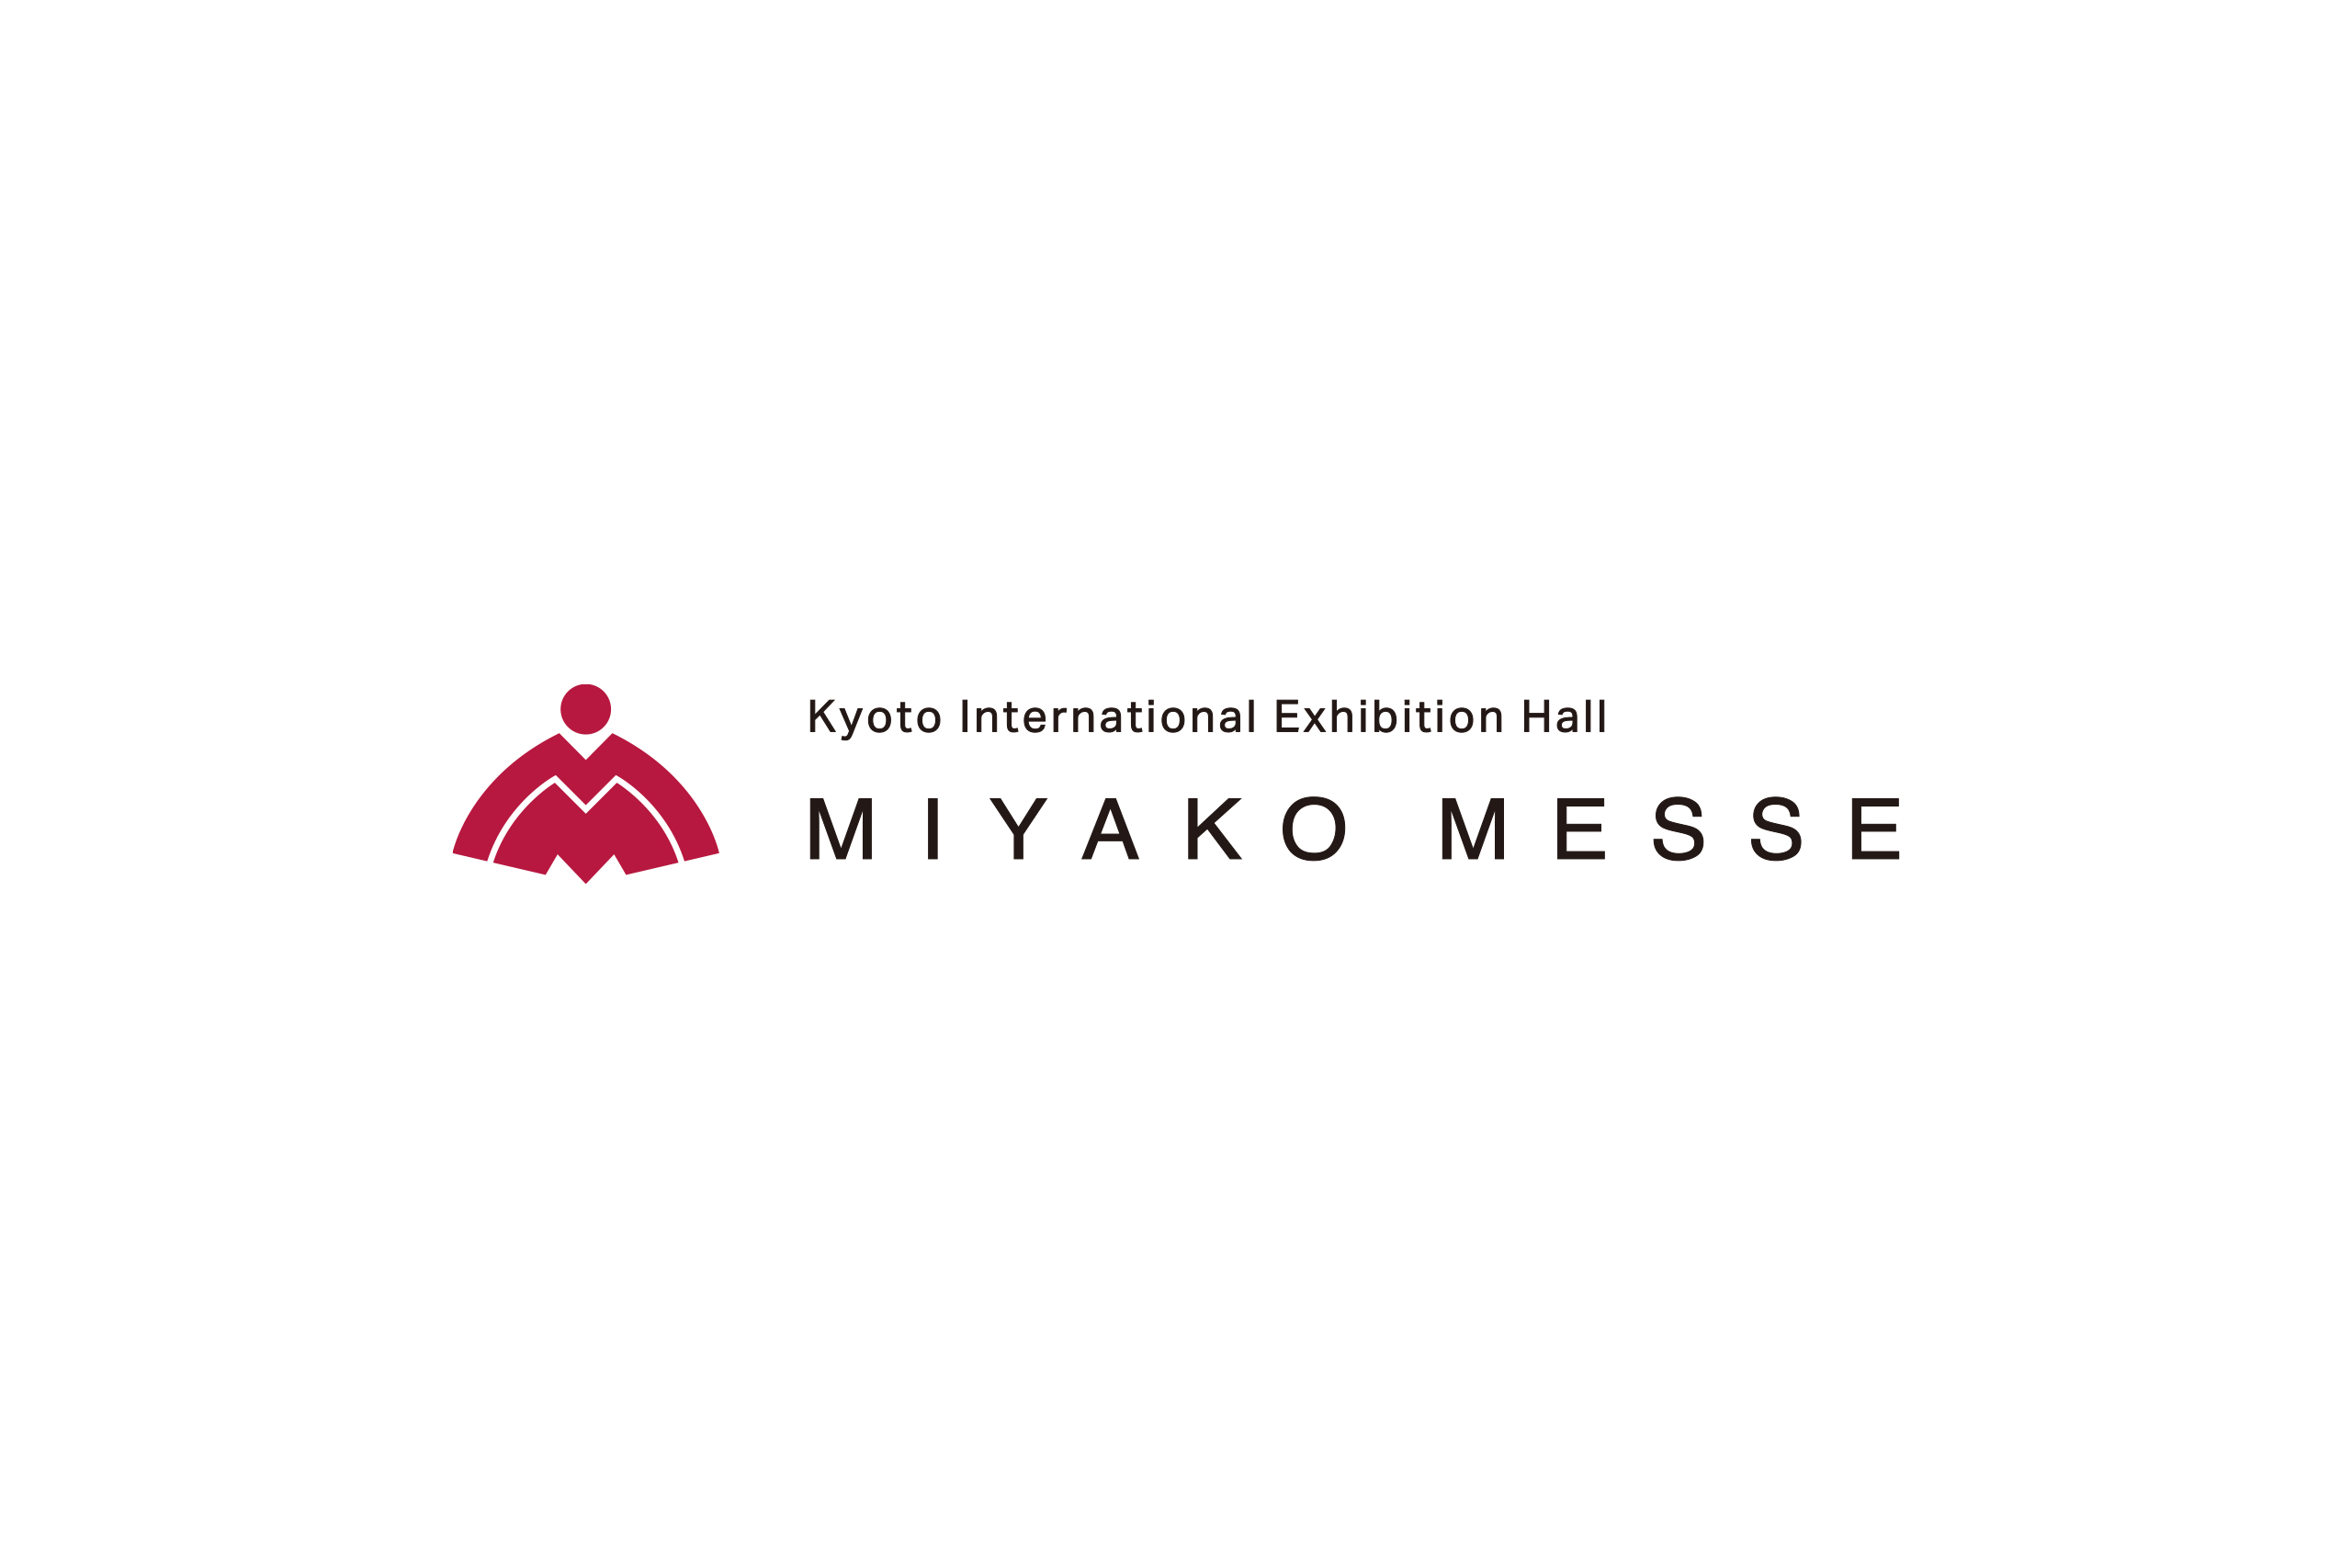 miyako_messe_logo0005